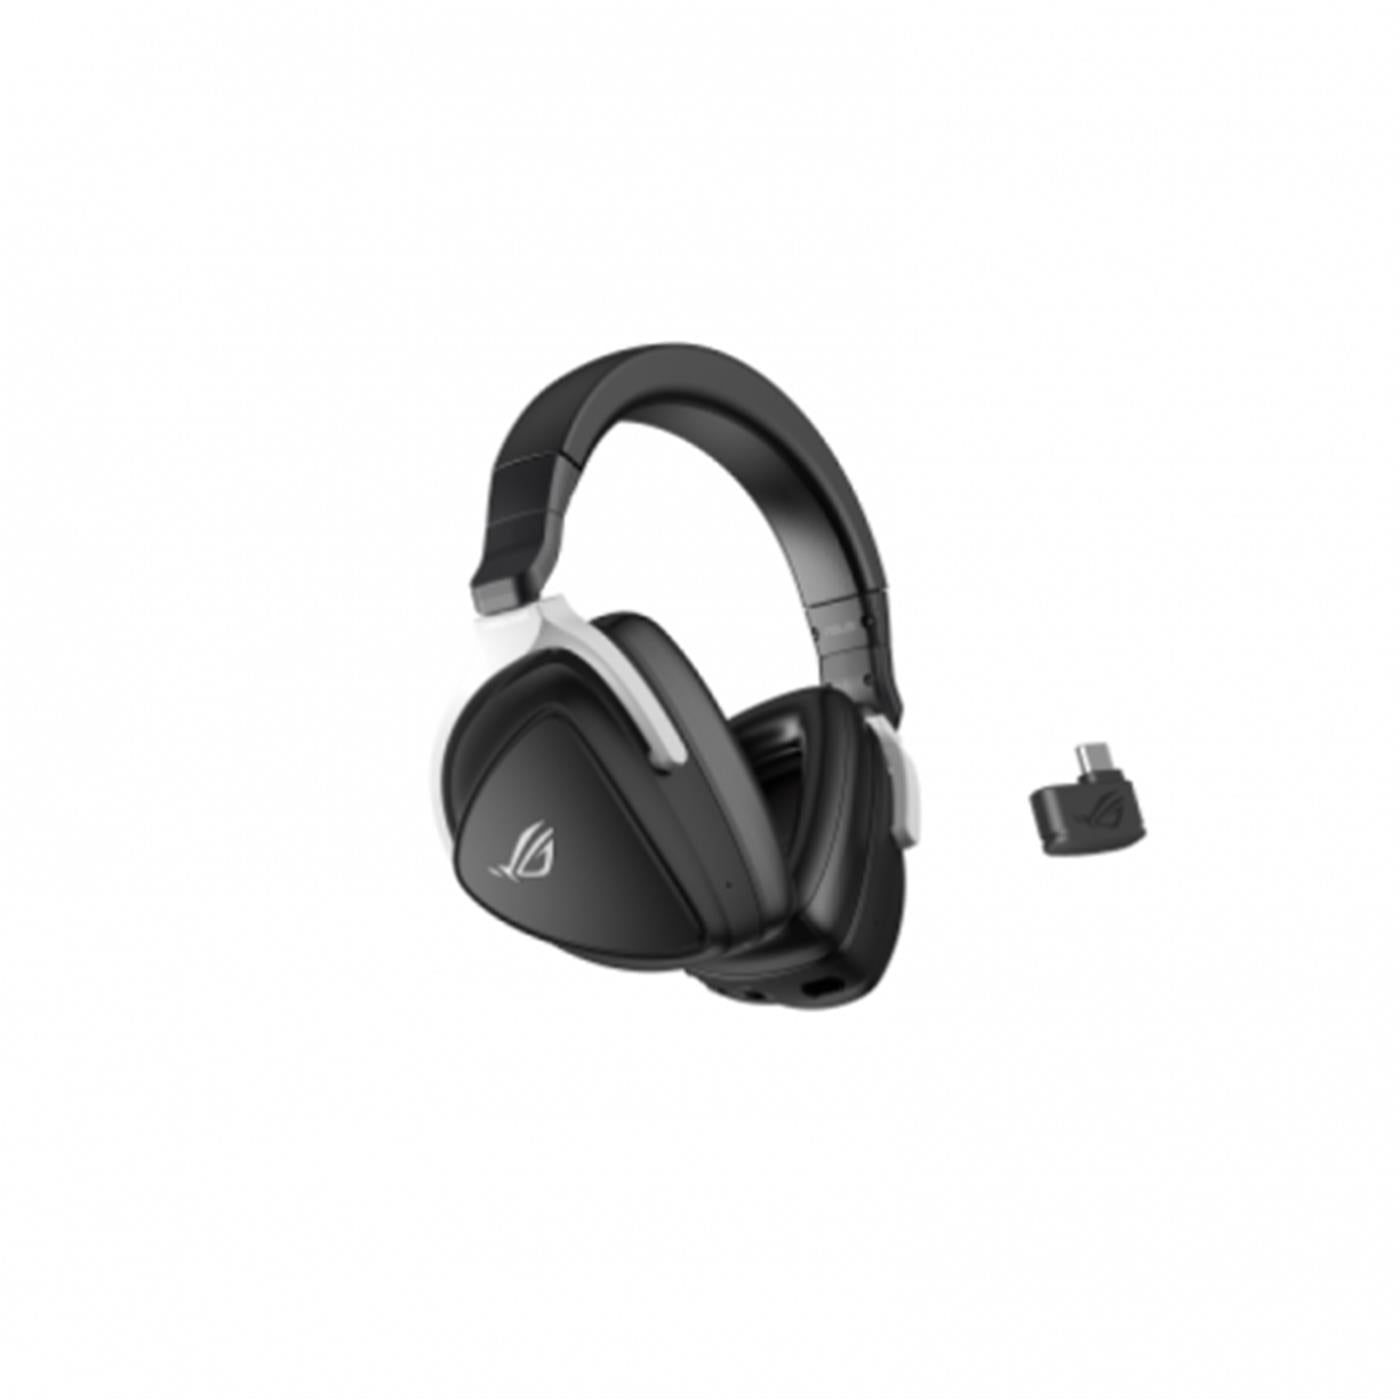 Asus ROG Delta S - Auriculares Gaming Inalámbricos Negro Todos los auriculares | Asus